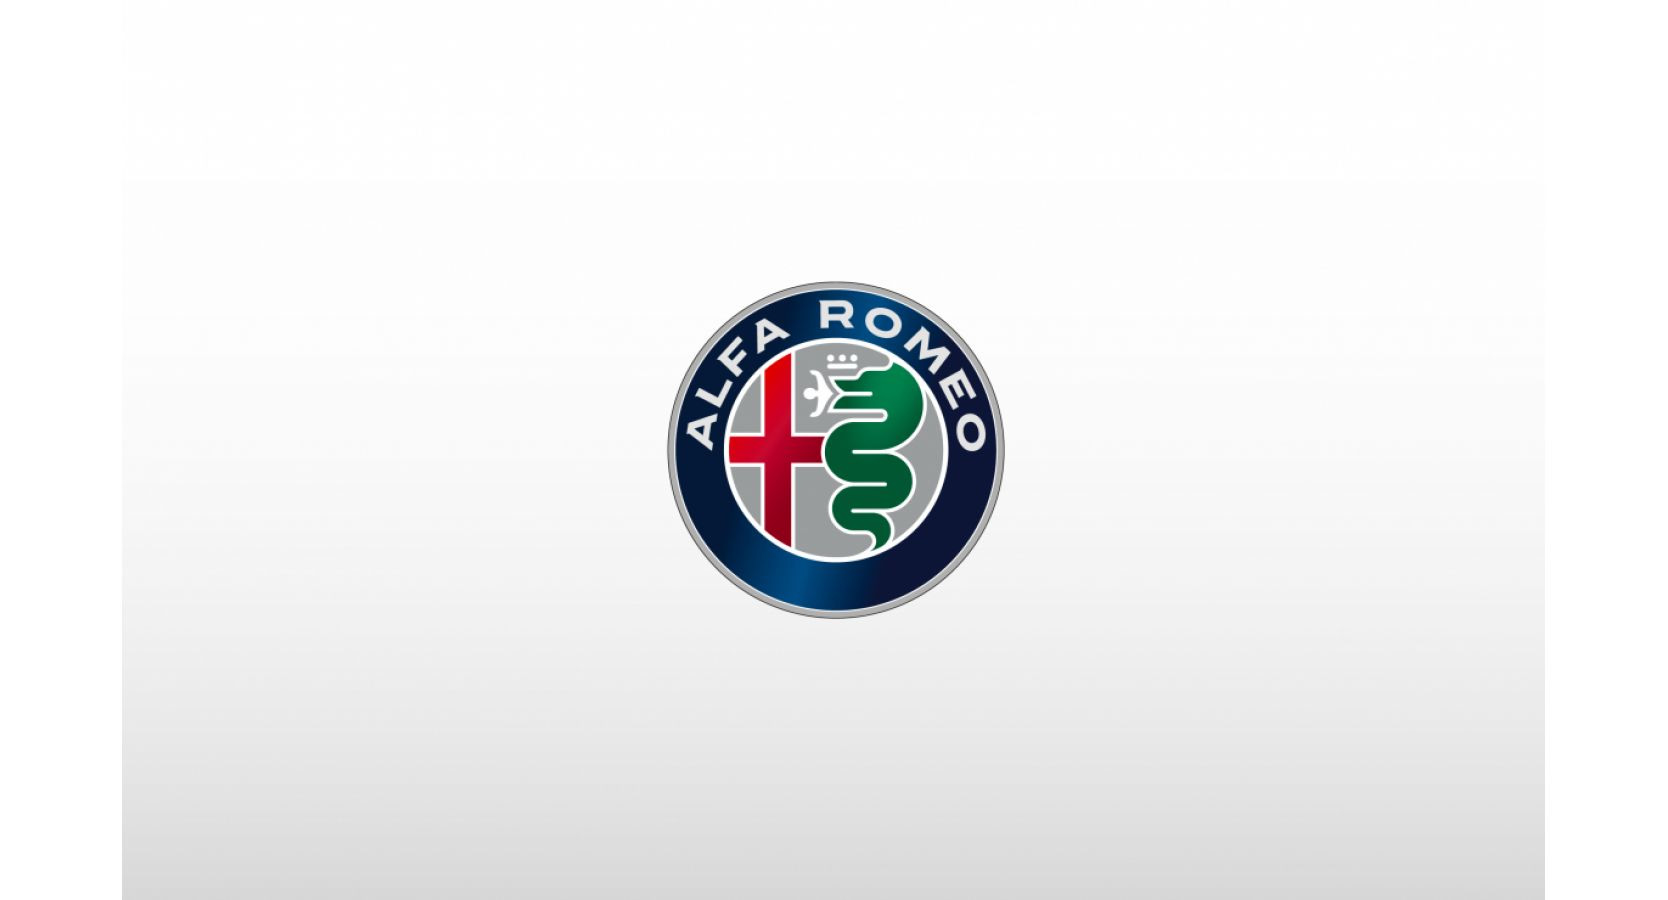 Alfa Romeo logo on a white background